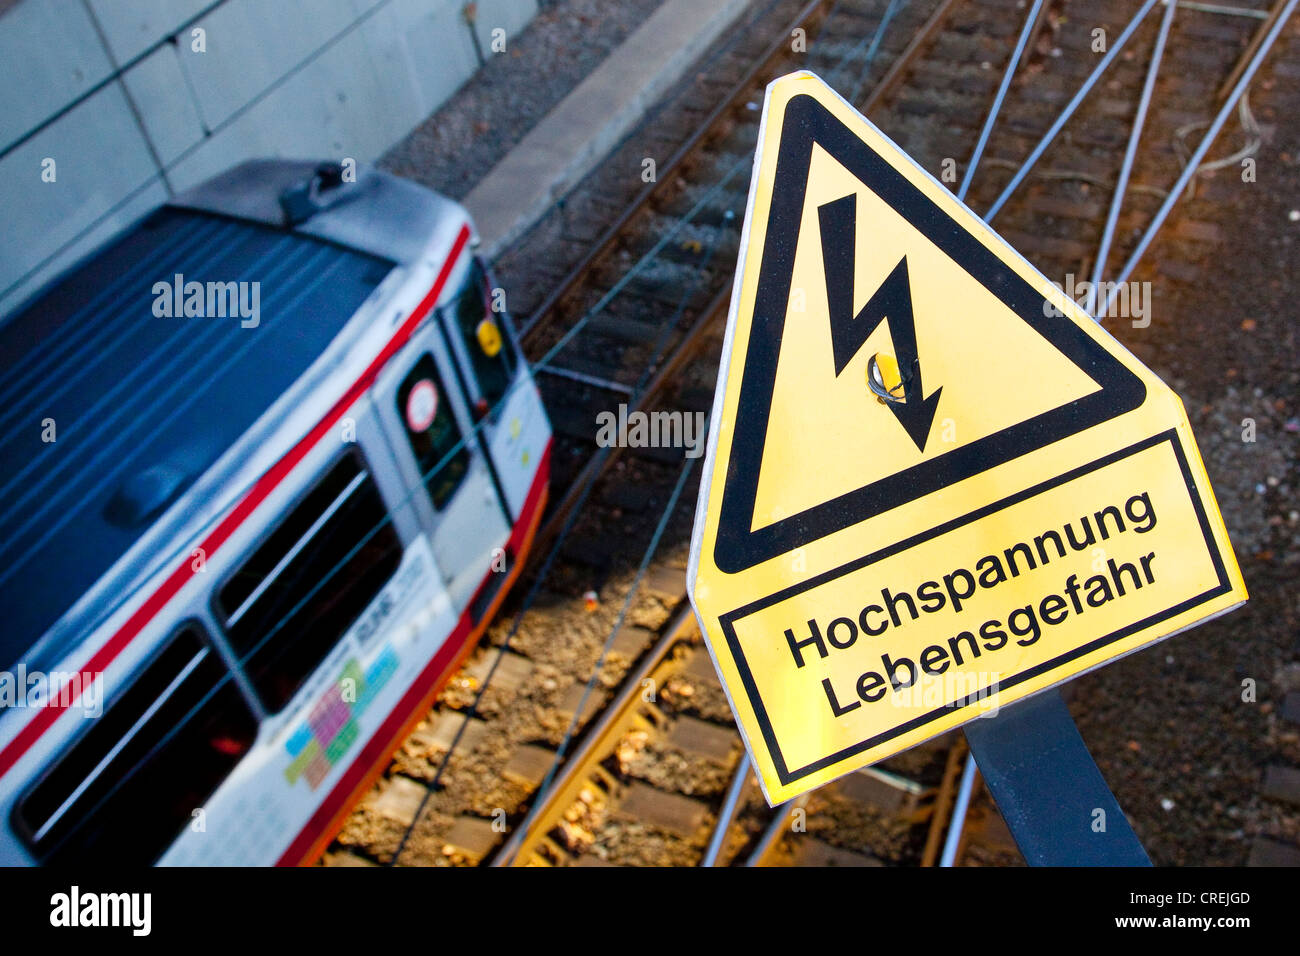 Schilder, Schriftzug "Hochspannung Lebensgefahr", Deutsch für "Hochspannung Lebensgefahr", auf einer Eisenbahnlinie von der s-Bahn Stockfoto